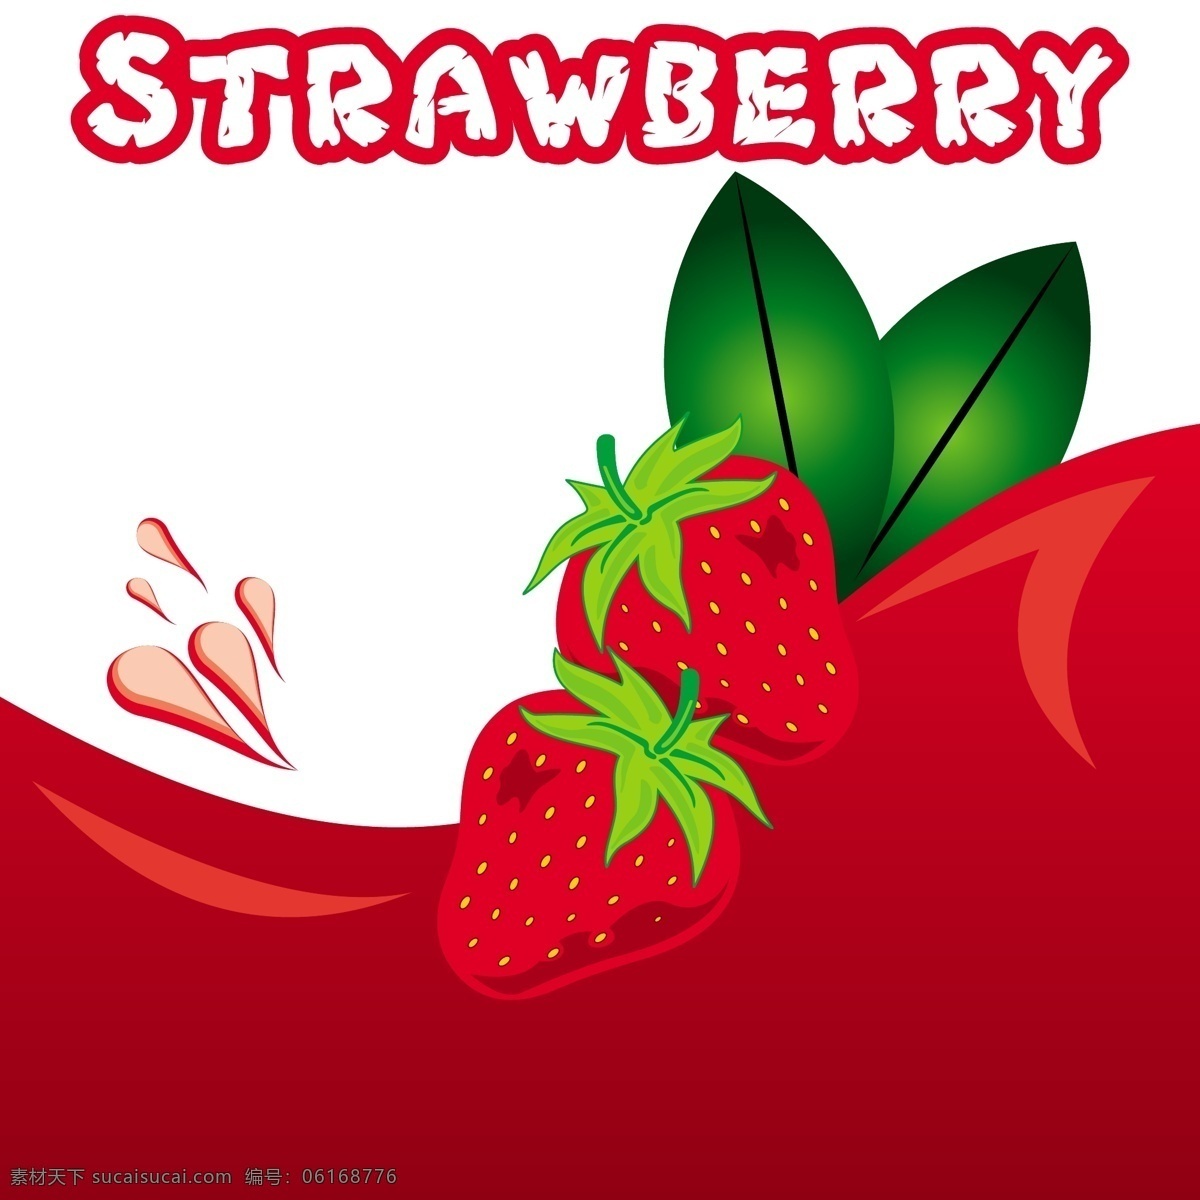 草莓矢量素材 草莓图片 草莓 红草莓 红色 绿叶 叶子 光泽 色泽 新鲜 生物世界 矢量草莓 矢量图 矢量水果 水果